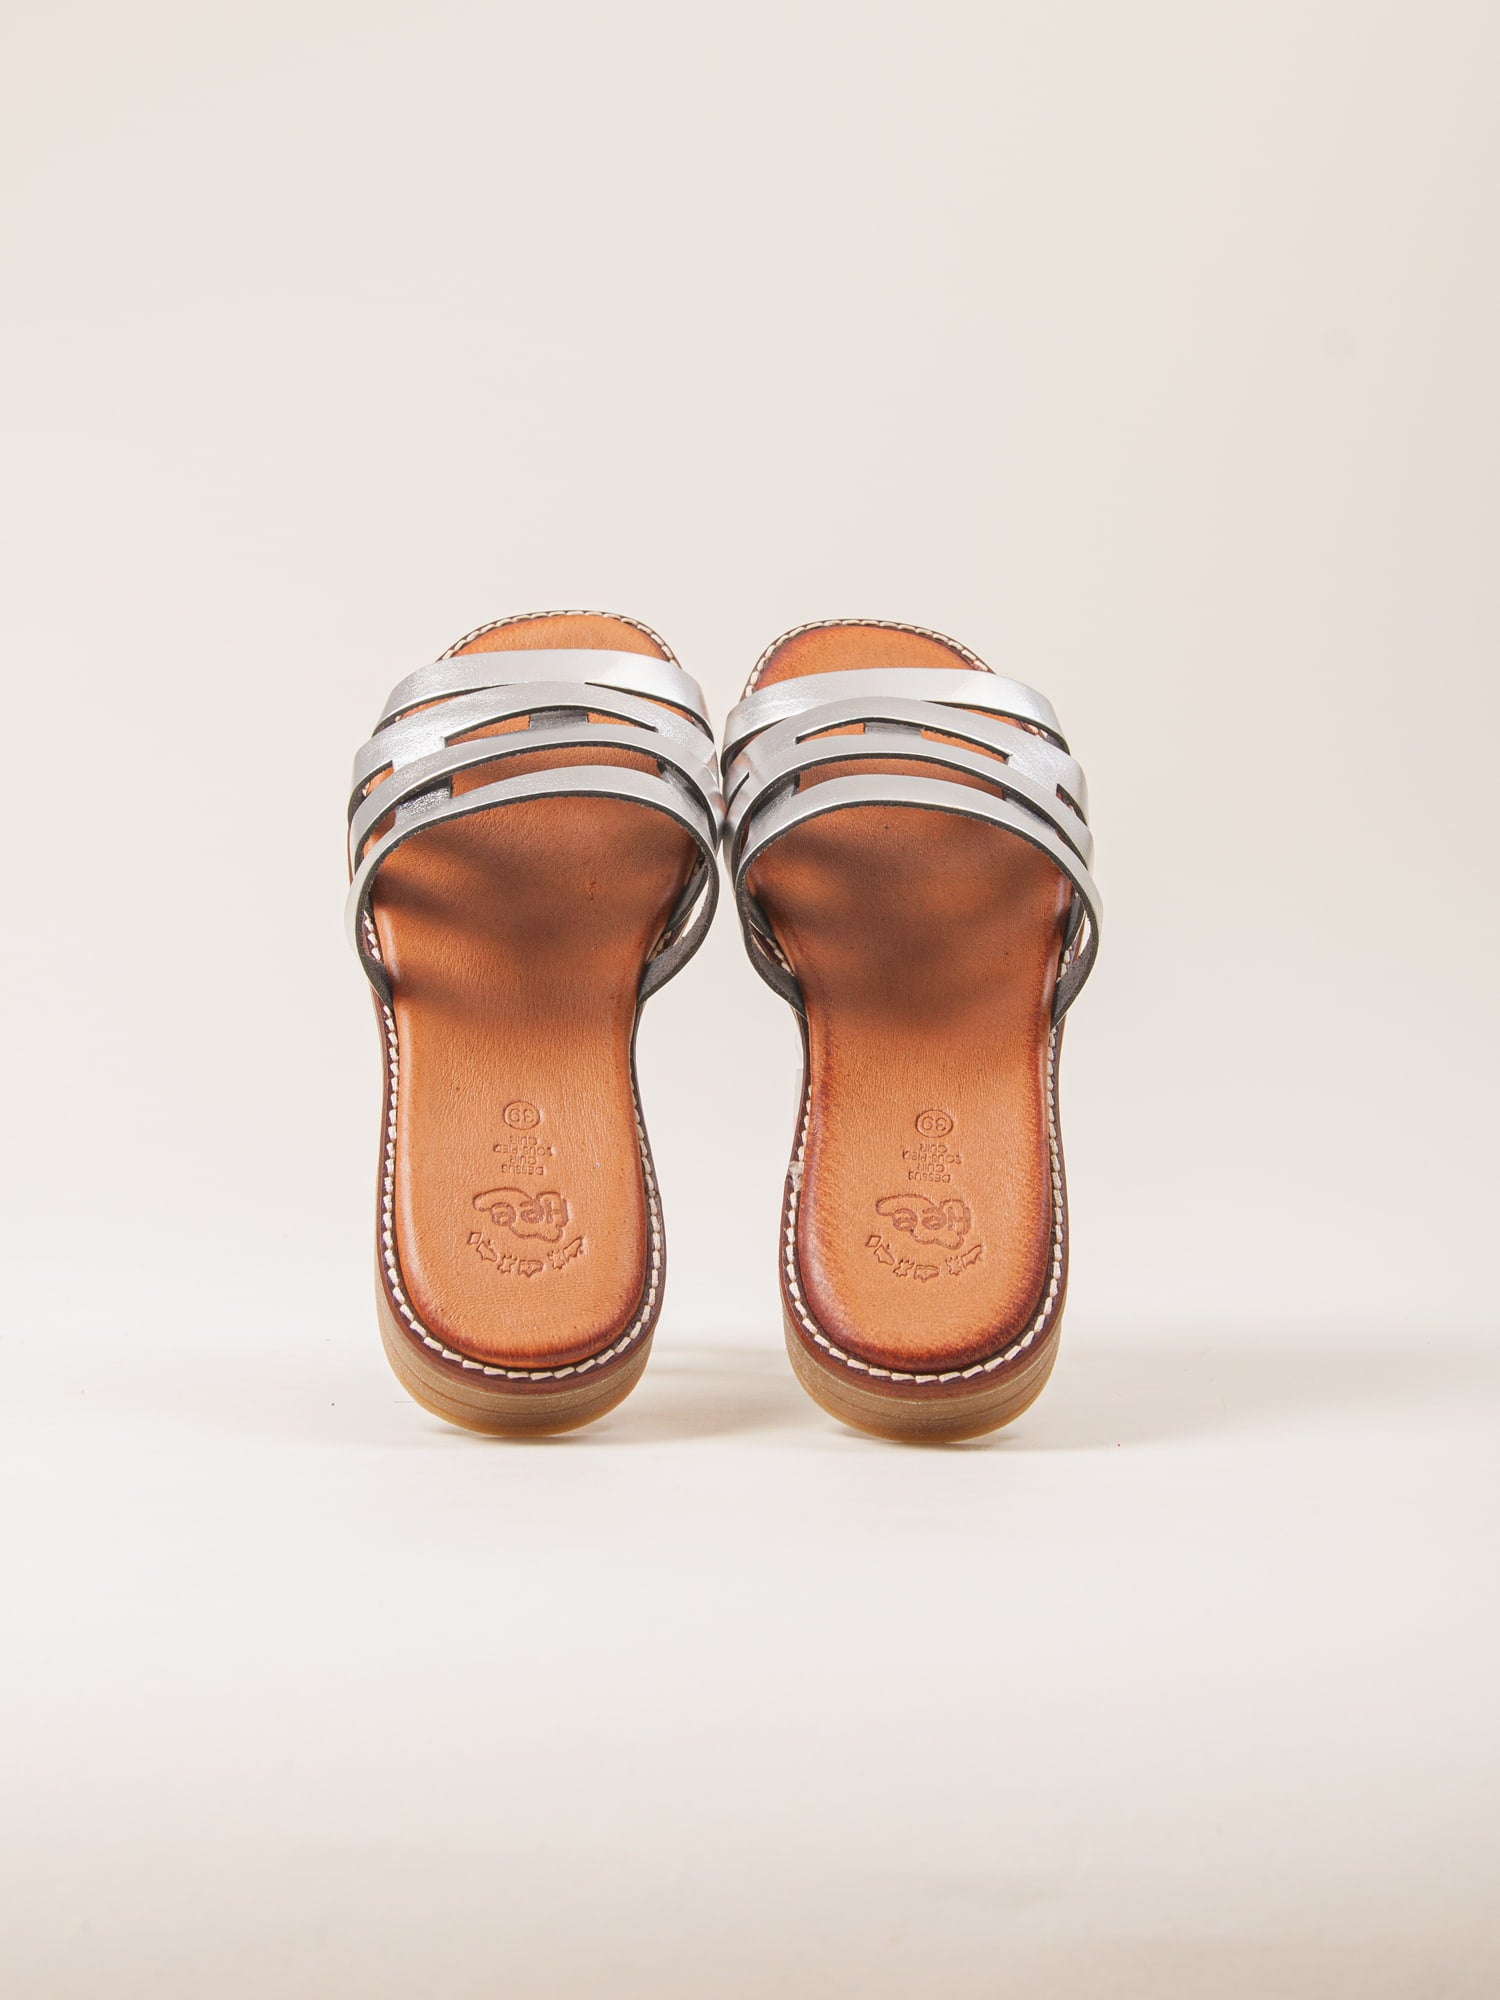 Sandalias planas de mujer cómodas y ligeras. Sandalias ideales para el verano.